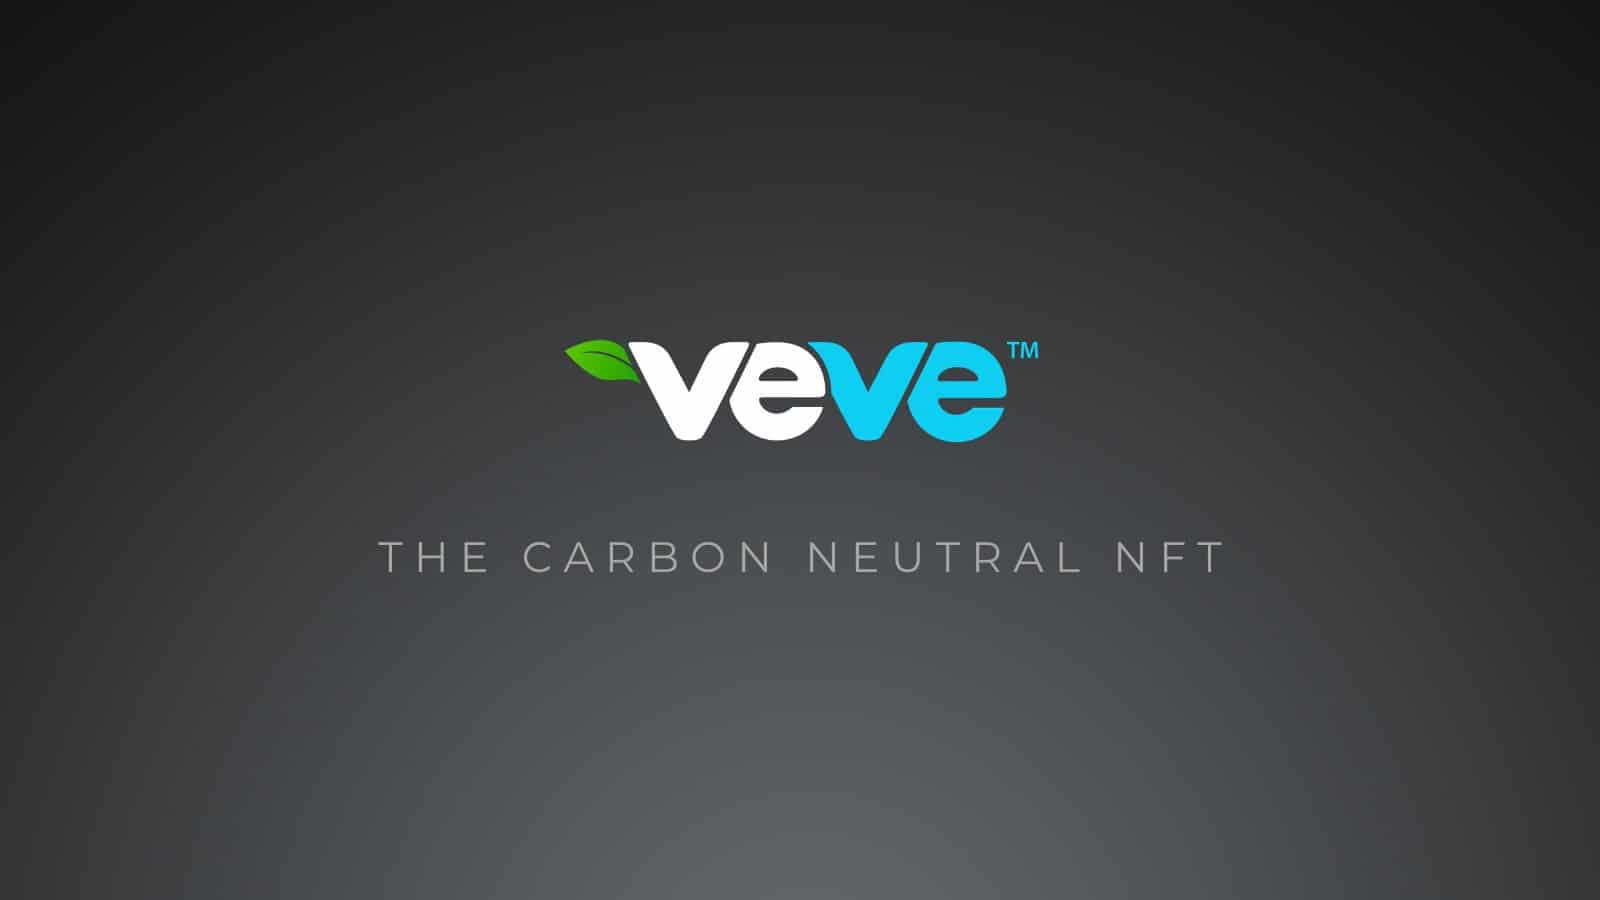 Veve aims to mint carbon neutral NFTs